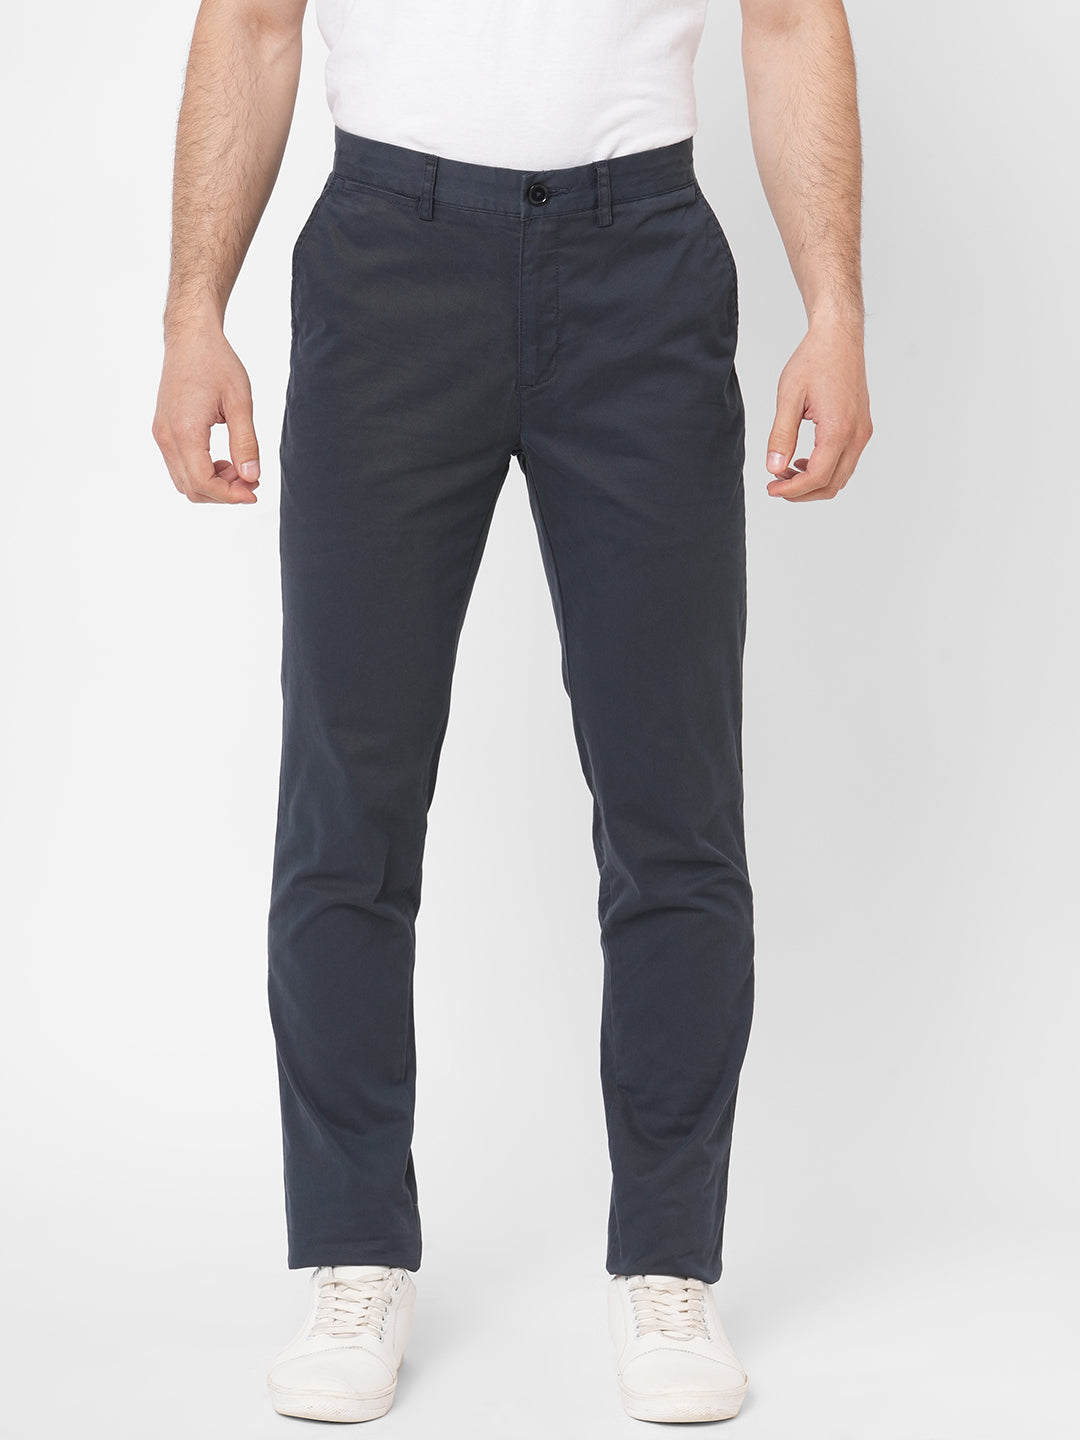 Men's Navy Cotton Lycra Slim Fit Pant